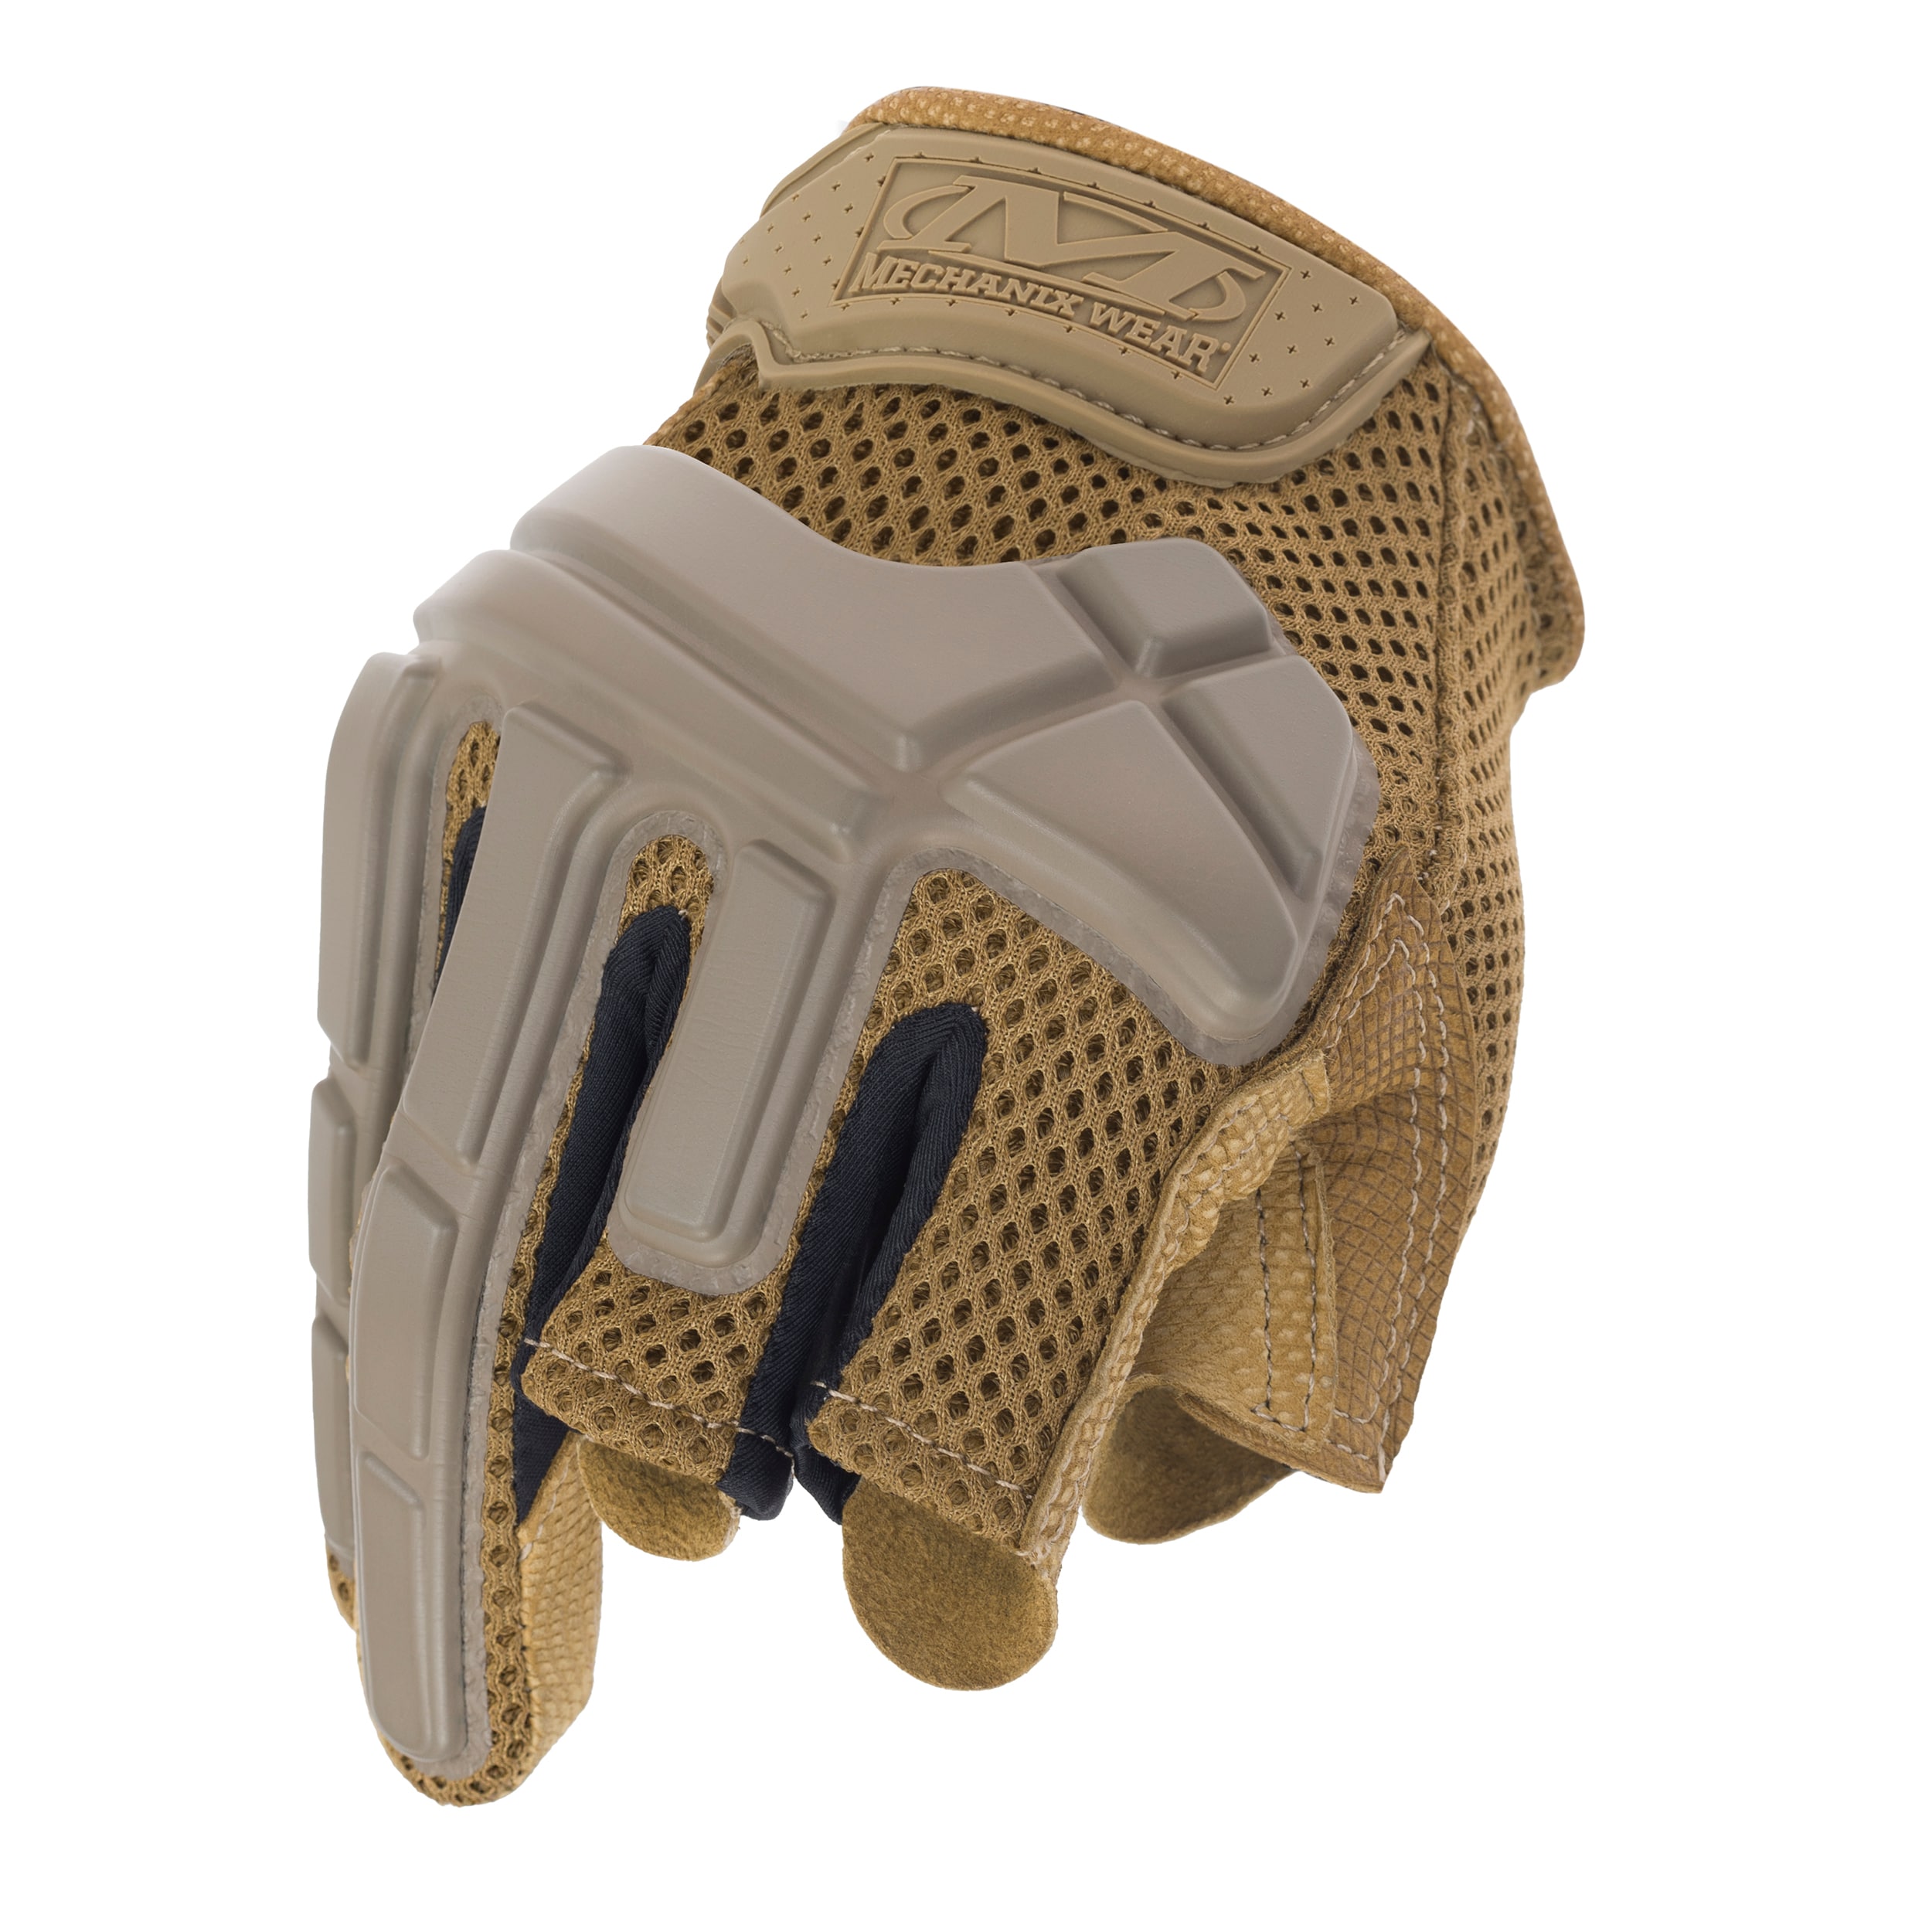 Mechanix Wear M-Pact Partial Palm Tactical Gloves Coyote - тактичні рукавички з неповним пальцем